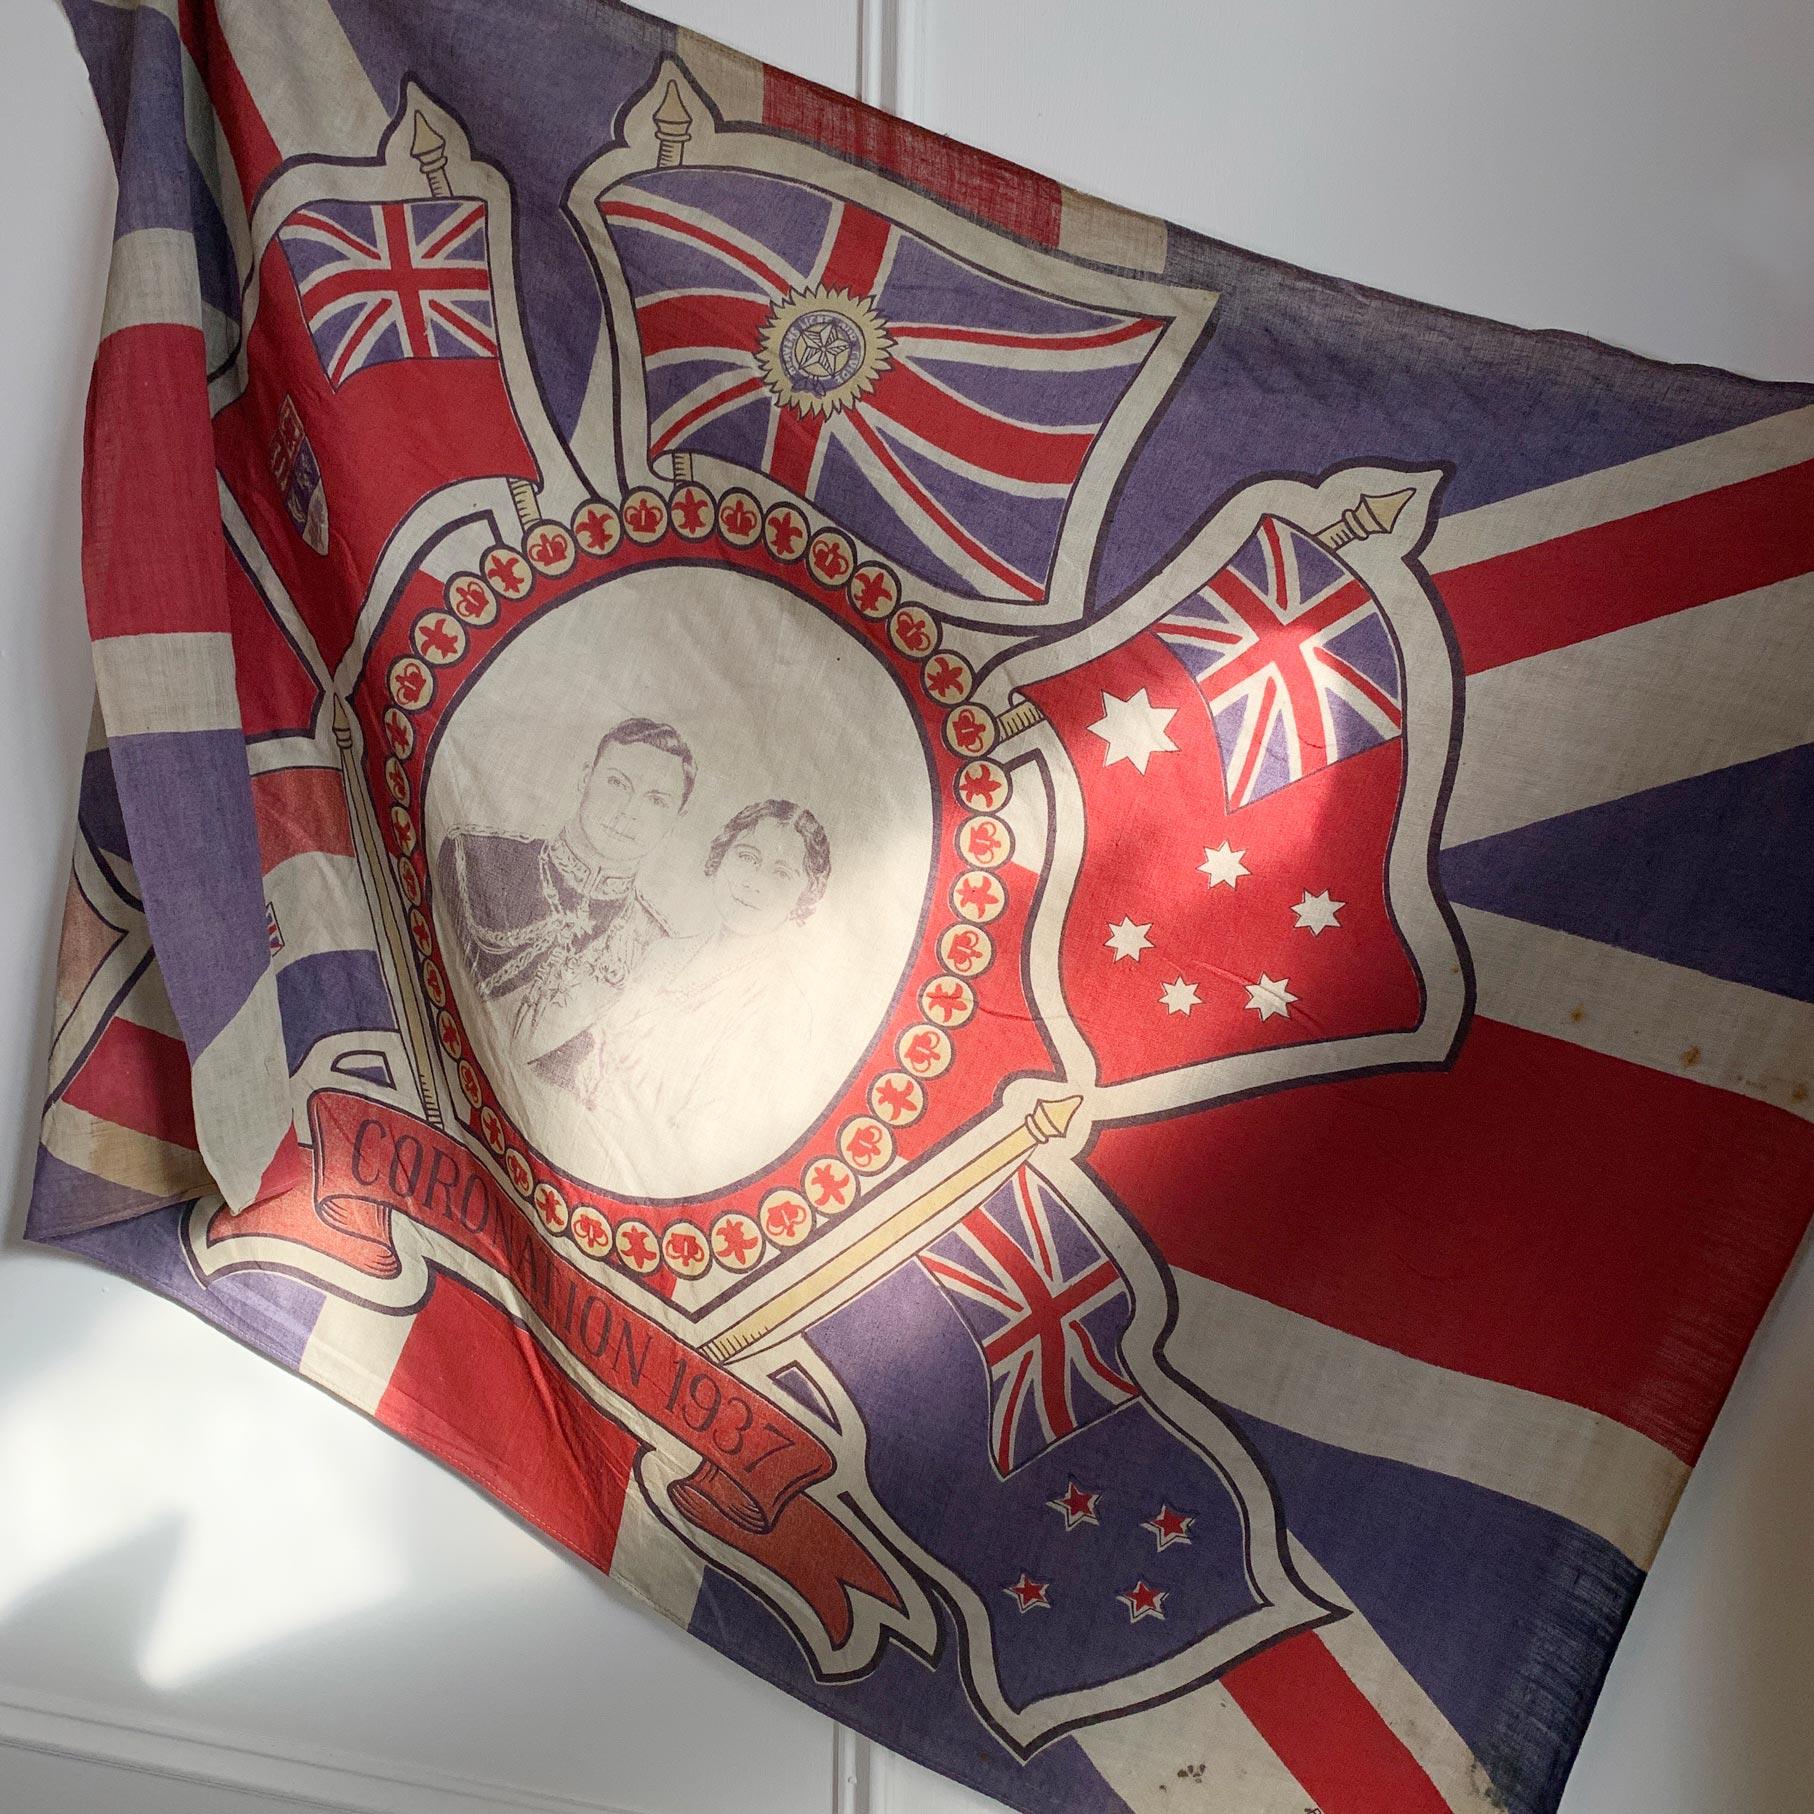 Britische Königsfamilie

Eine seltene und historische königliche Krönungsfahne von der Krönung Seiner Königlichen Hoheit König Georg VI. im Jahr 1937. Die Flagge zeigt König Georg VI. neben Königin Elisabeth, der Königinmutter.
    
Georg VI.